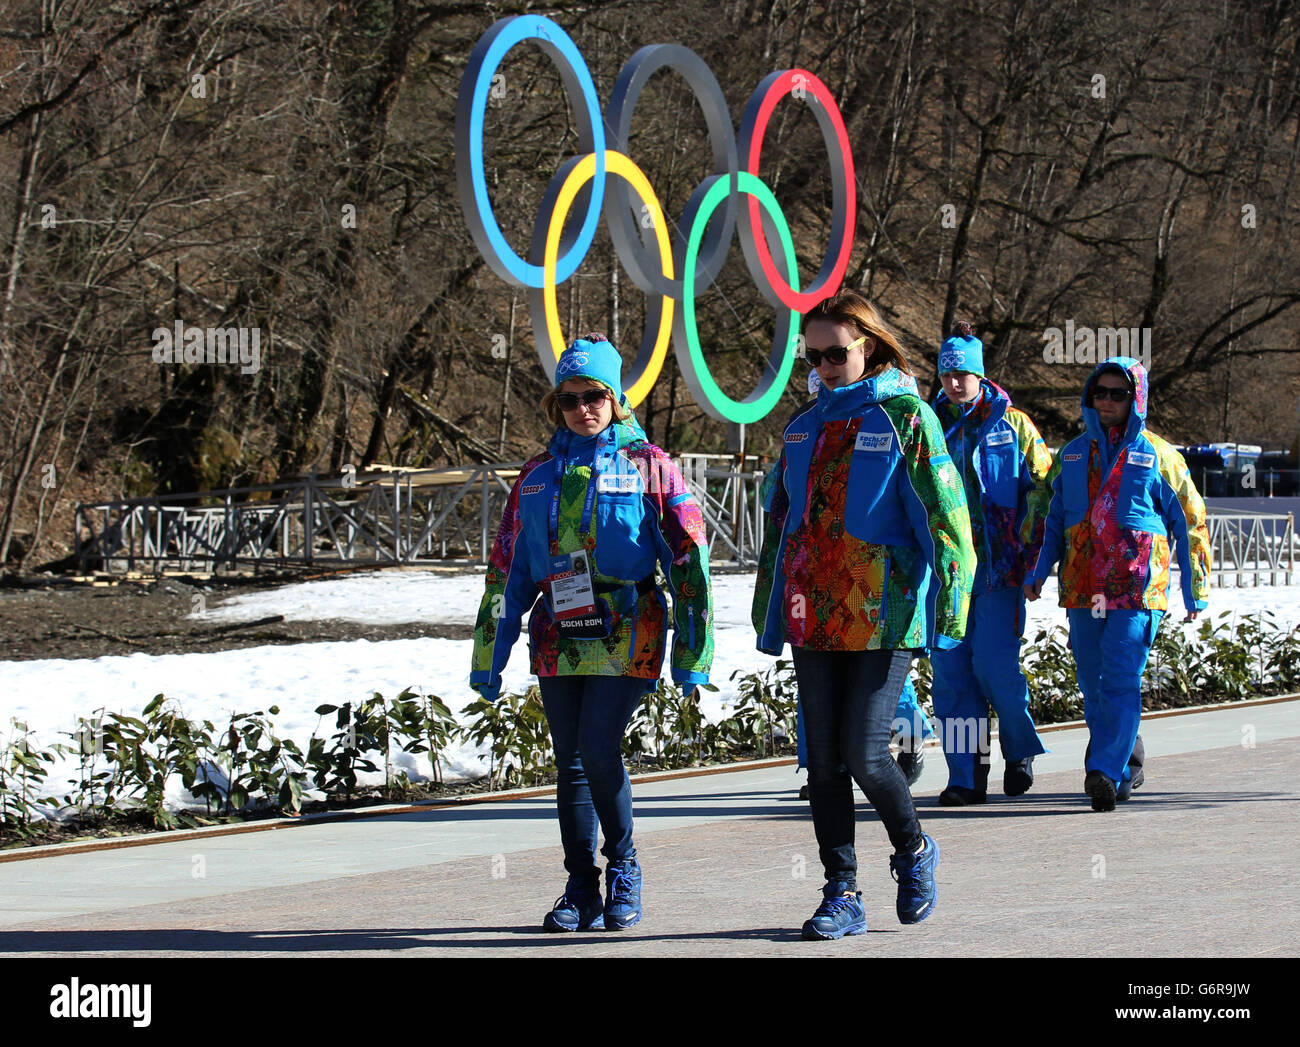 Olympische Winterspiele in Sotschi - Aktivitäten vor den Spielen - Sonntag. Vor den Olympischen Winterspielen in Sotschi 2014 laufen die Menschen an einem olympischen Schild im Rosa Khutor Alpine Resort vorbei. Stockfoto